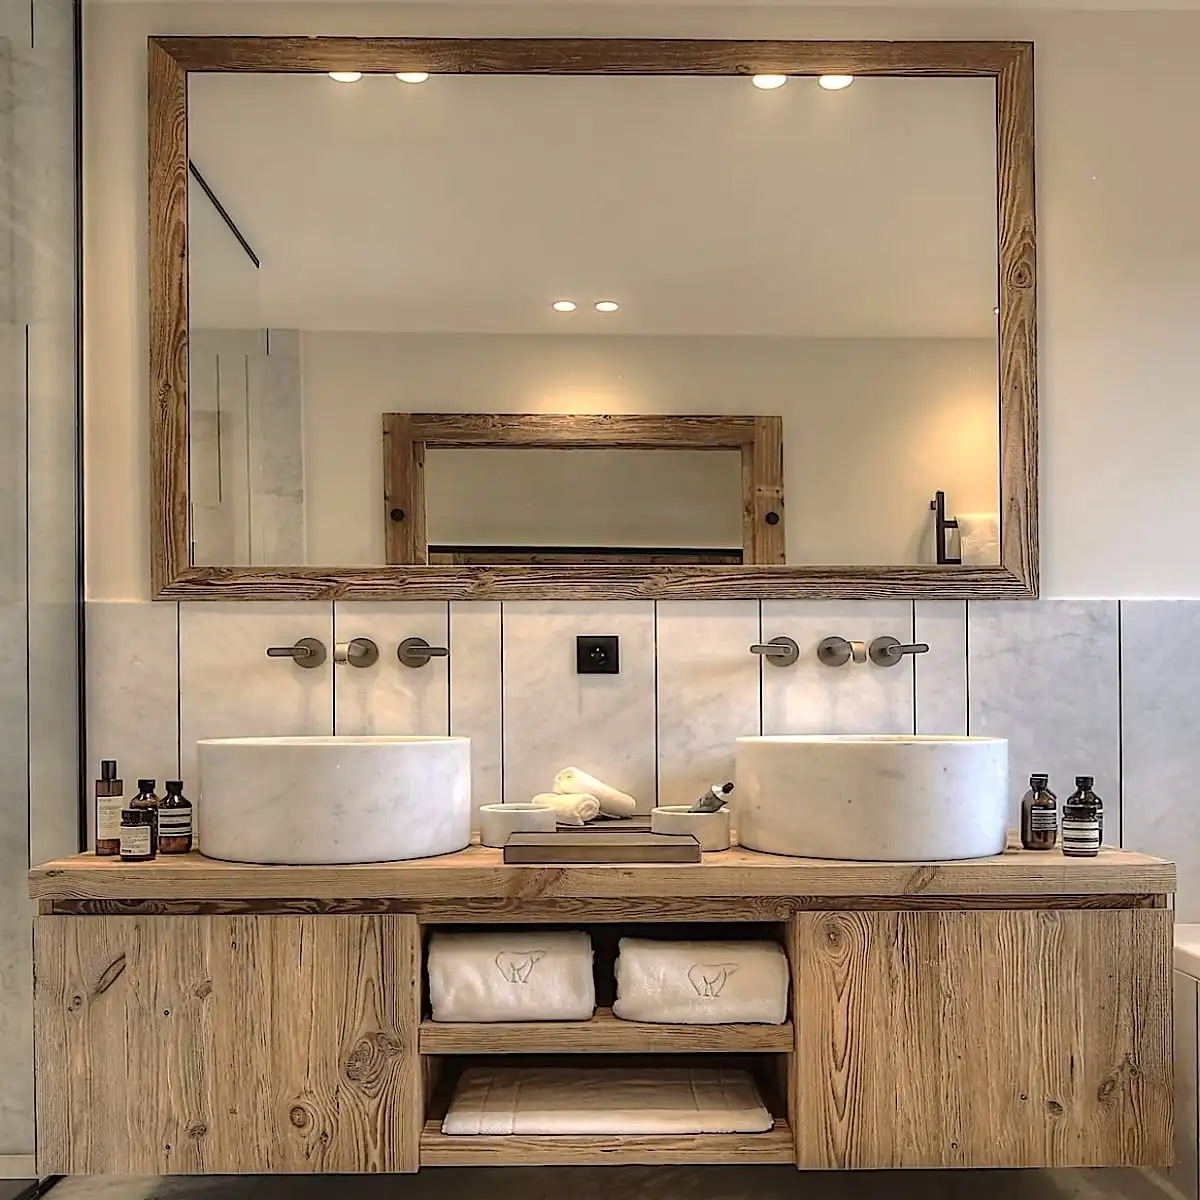  Salle de bain moderne comprenant un grand miroir avec cadre en bois, deux lavabos ovales sur une vanité à panneau 3 plis avec rangement et des murs en marbre. 